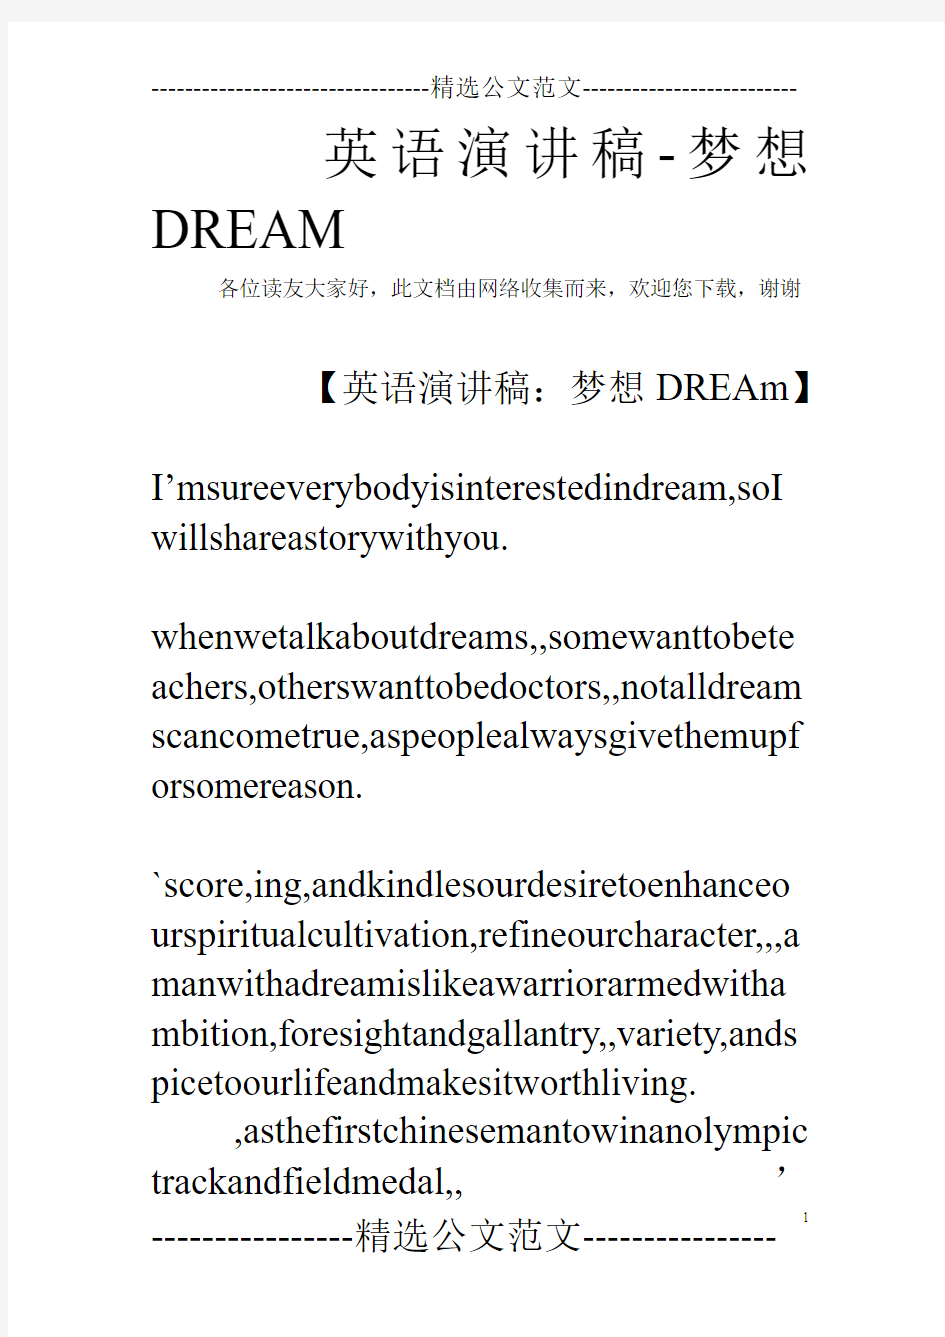 英语演讲稿-梦想DREAM